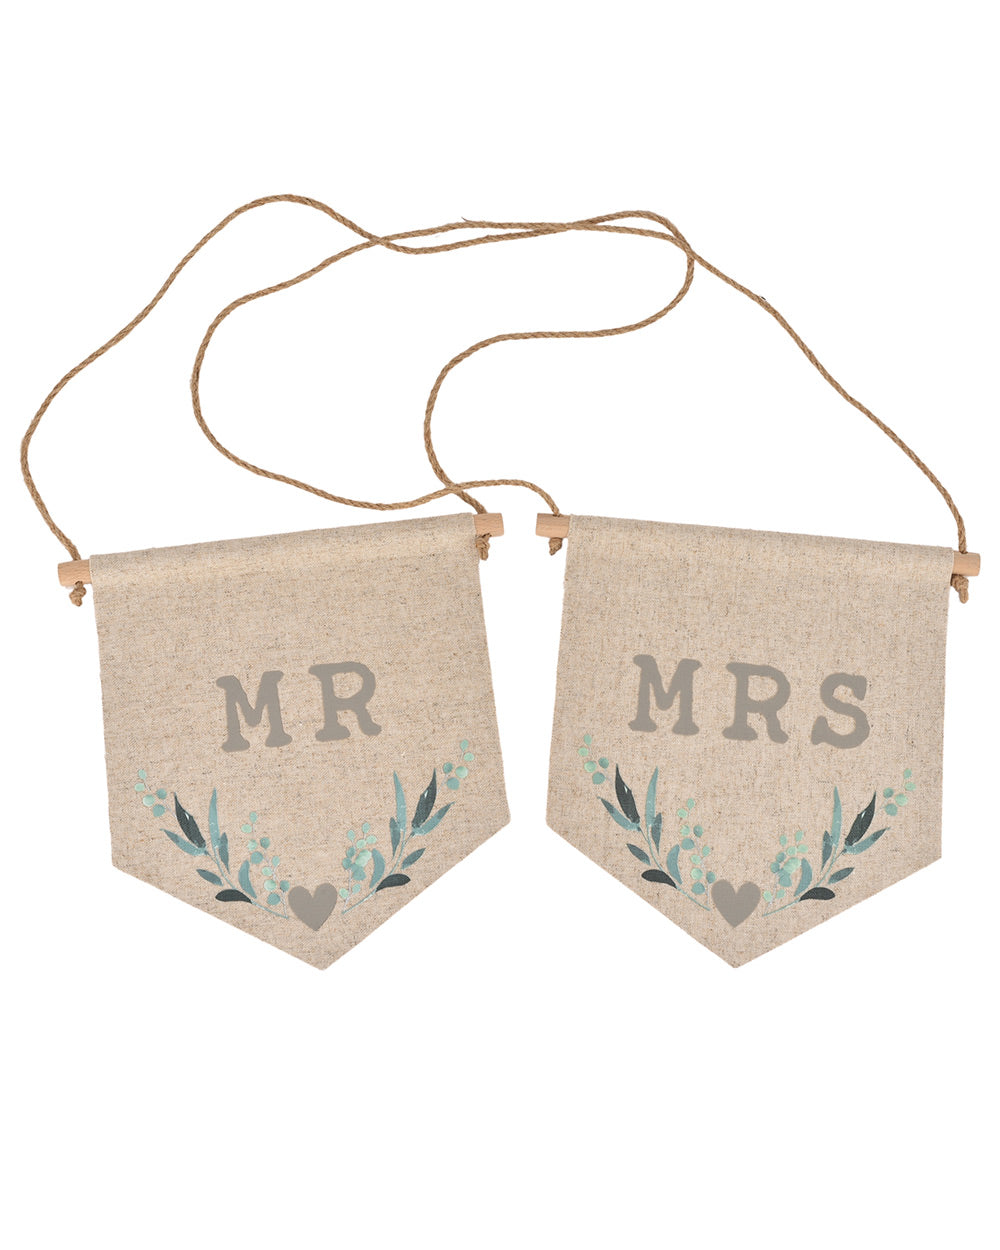 Mr & Mrs Wedding Chair Signs Leaf Print